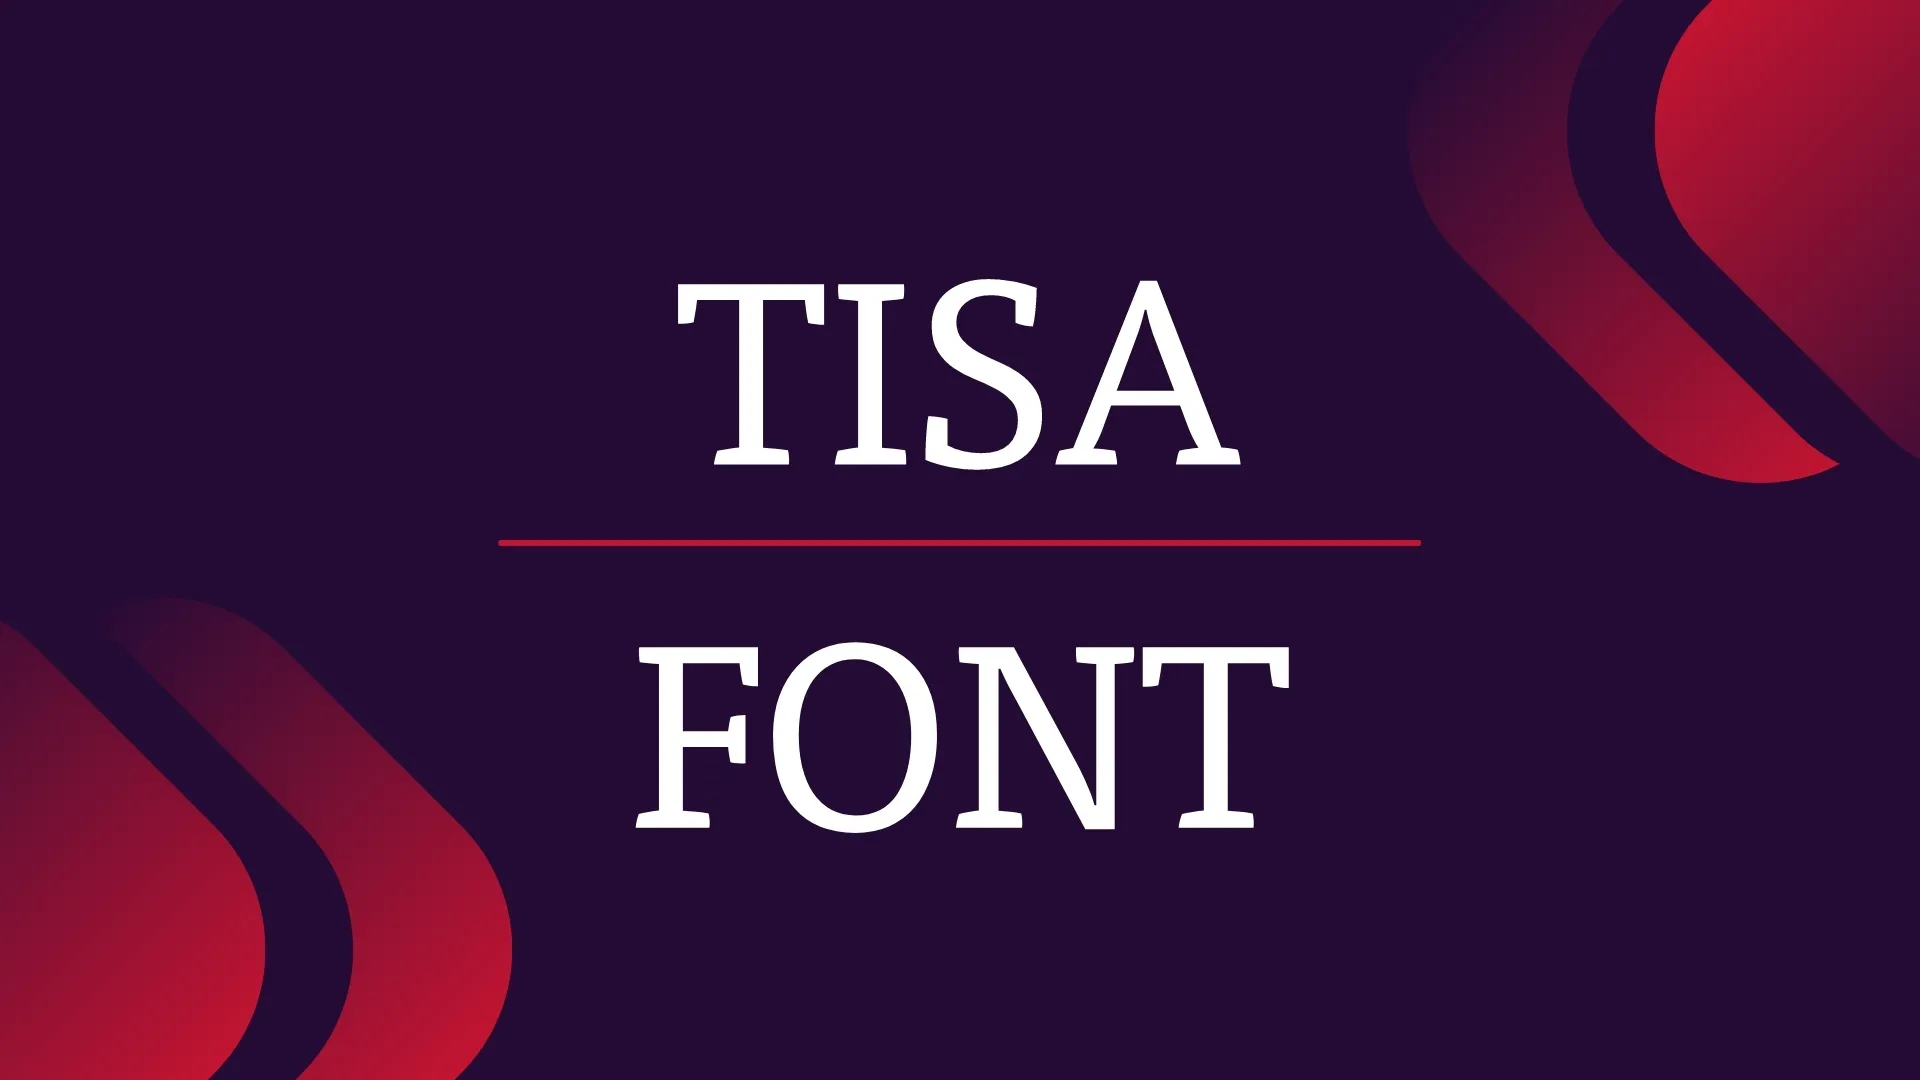 Tisa Font